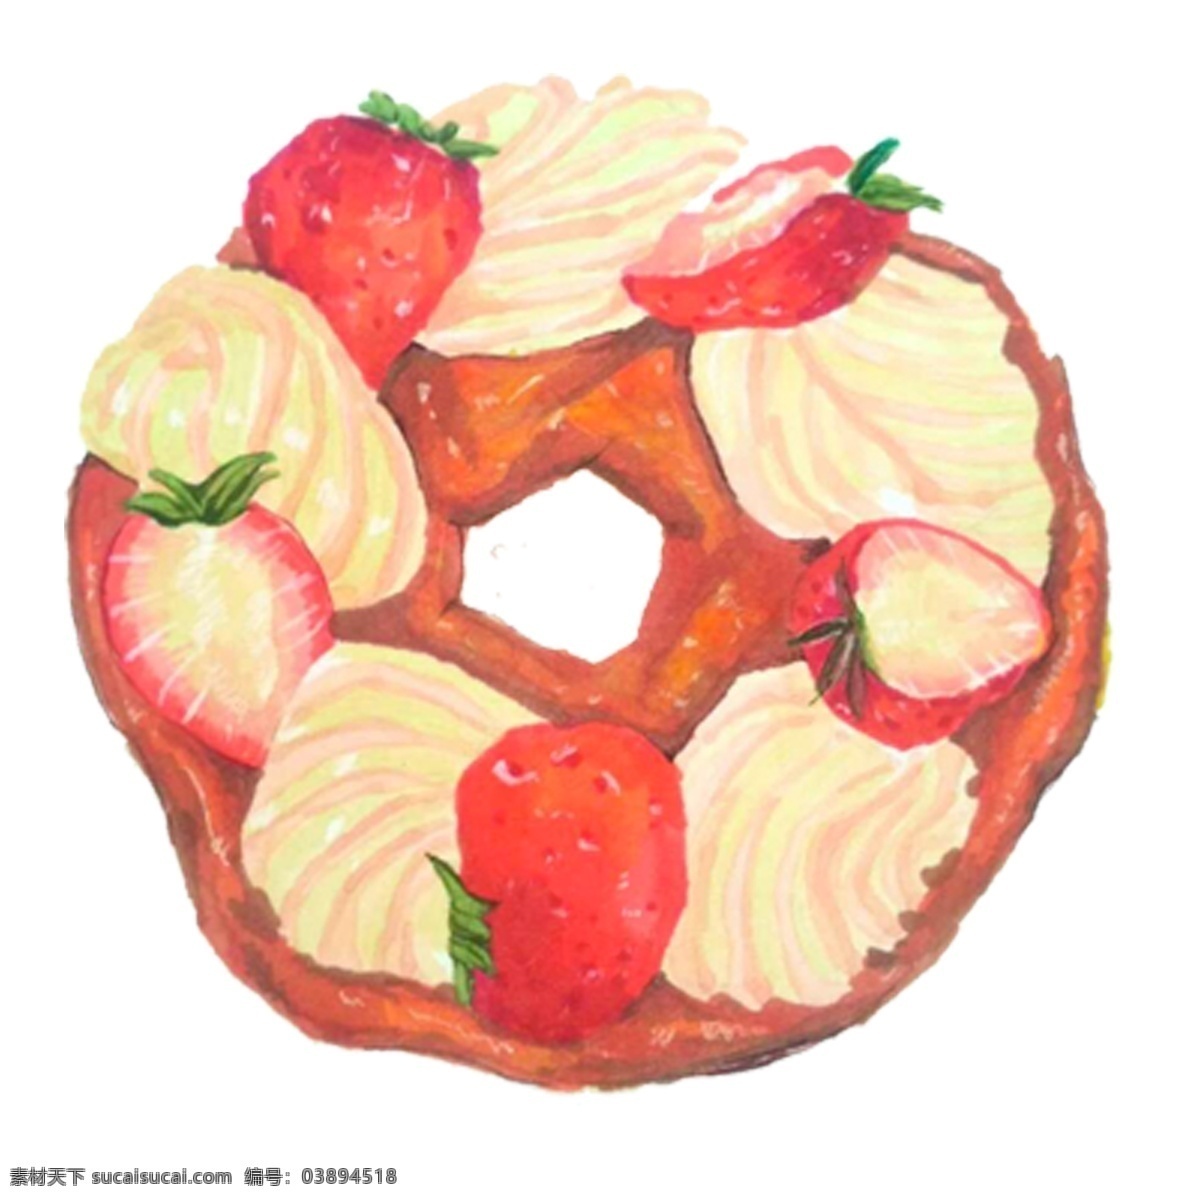 圆形 草莓 奶油 甜甜 圈 免 抠 图 草莓甜甜圈 面包 蛋糕 奶油蛋糕 卡通 披萨 免抠图 夹心